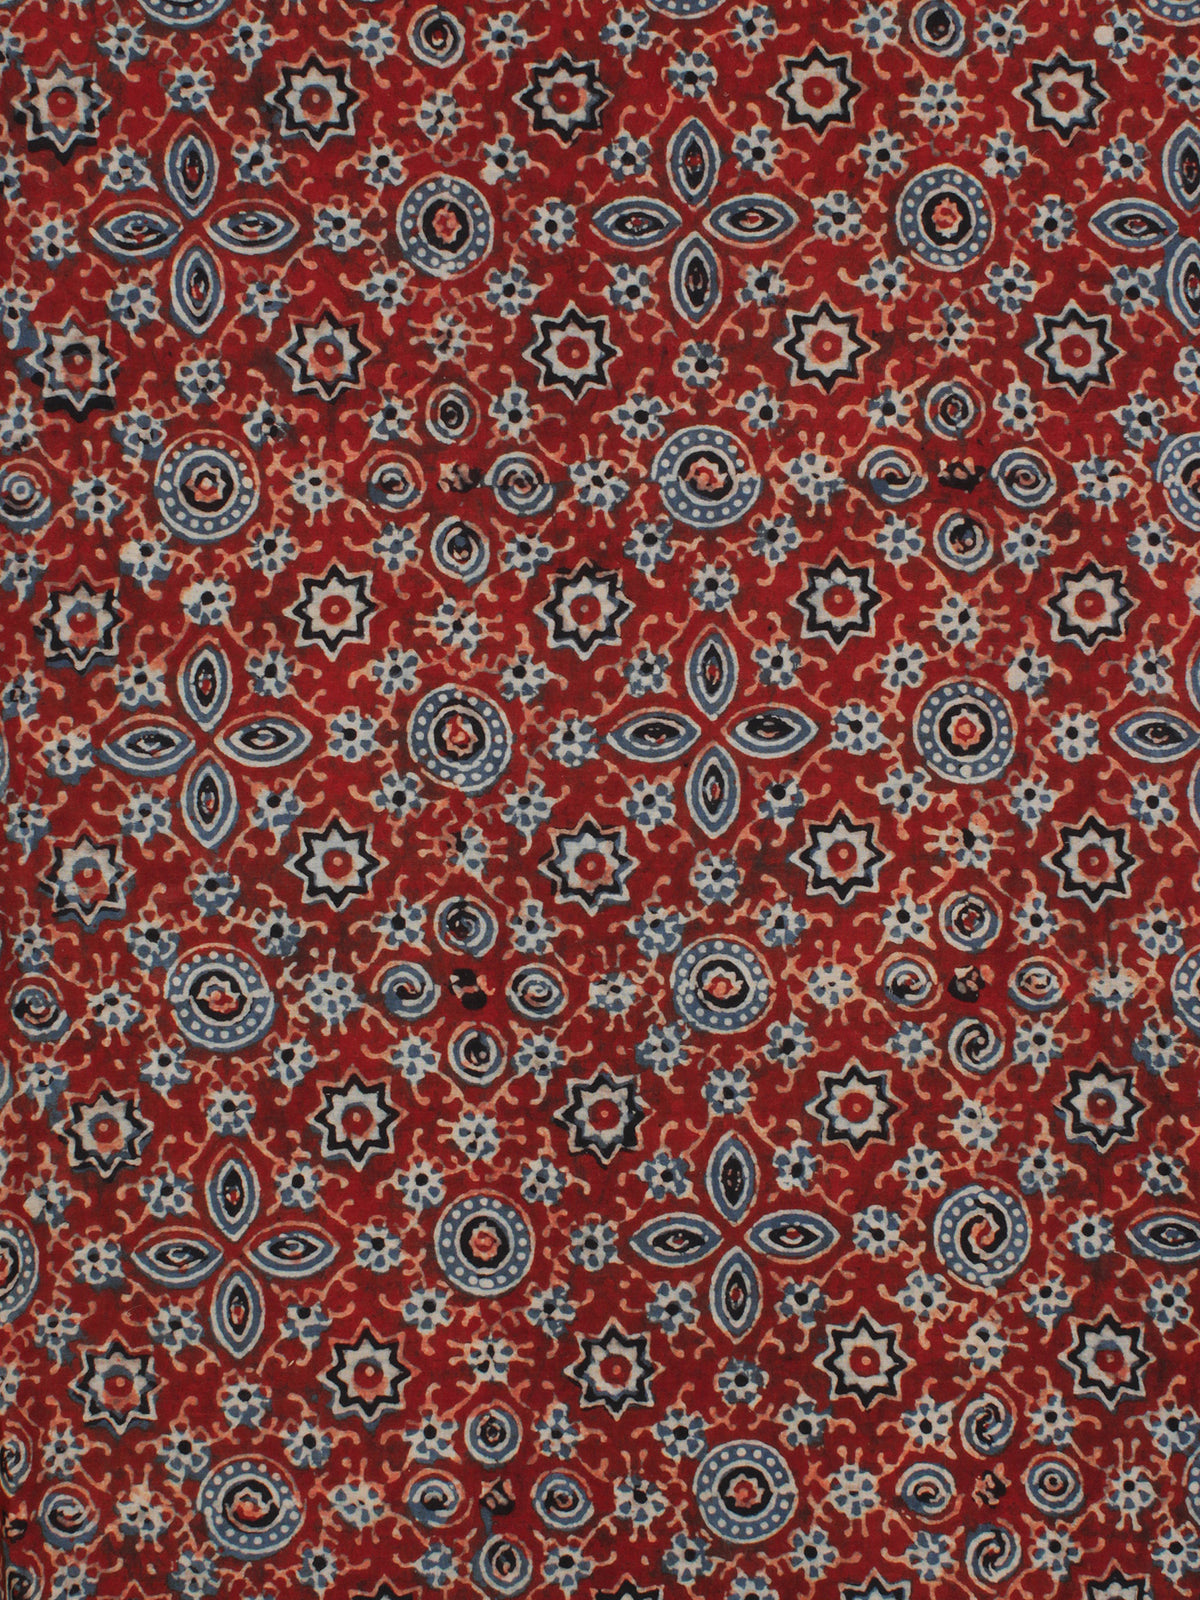 Red Indigo Black Ajrakh Hand Block Printed Cotton Fabric Per Meter - F003F2122